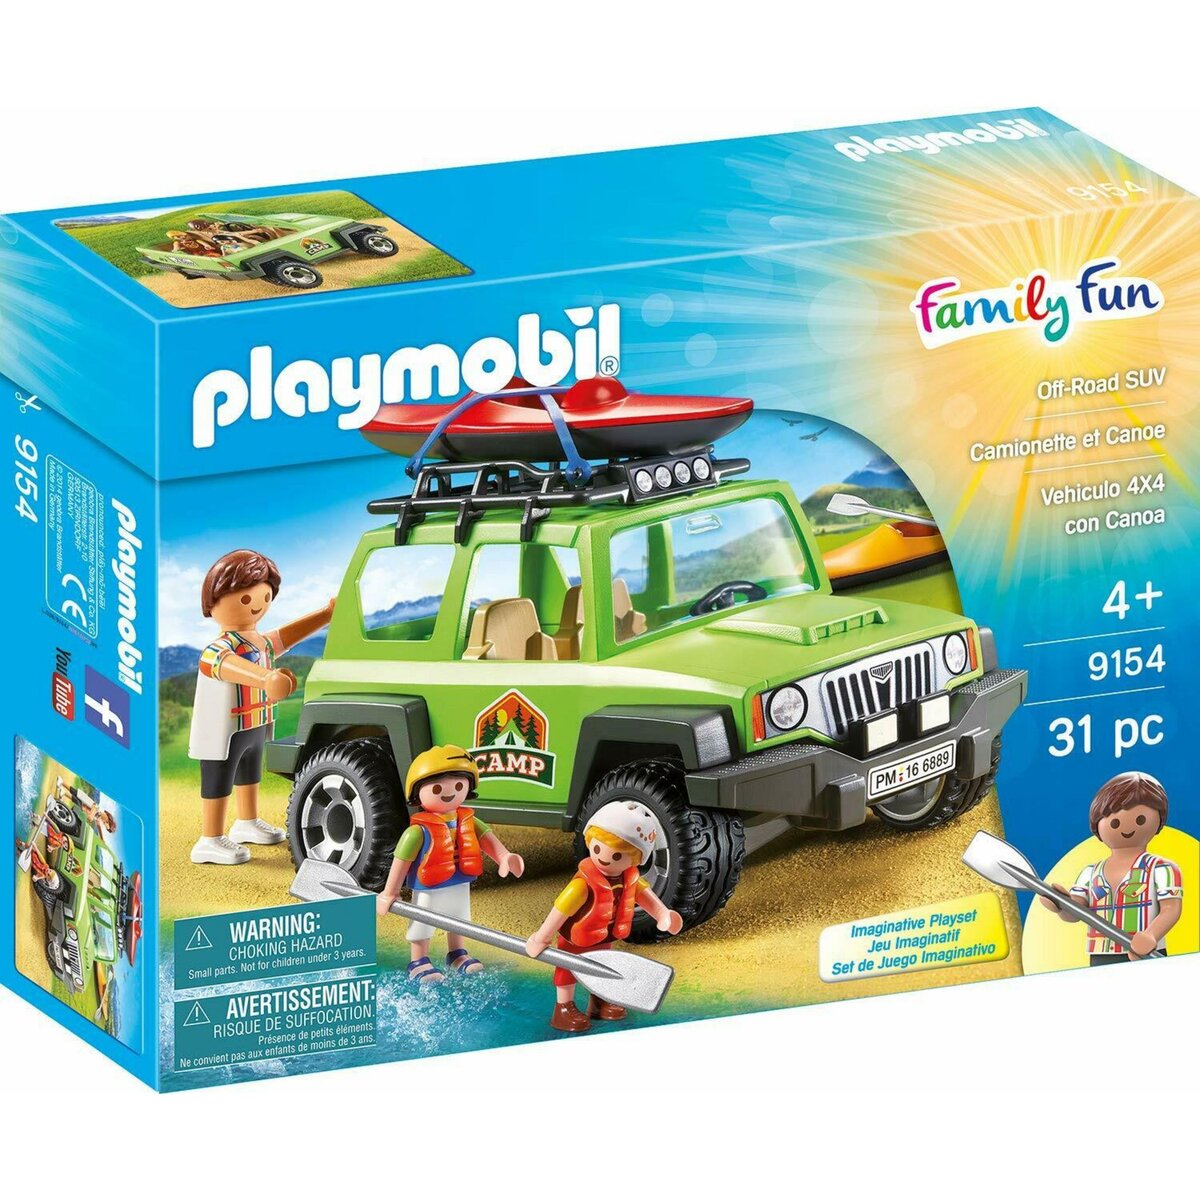 PLAYMOBIL 9154 - Family Fun - Camionnette et canoé